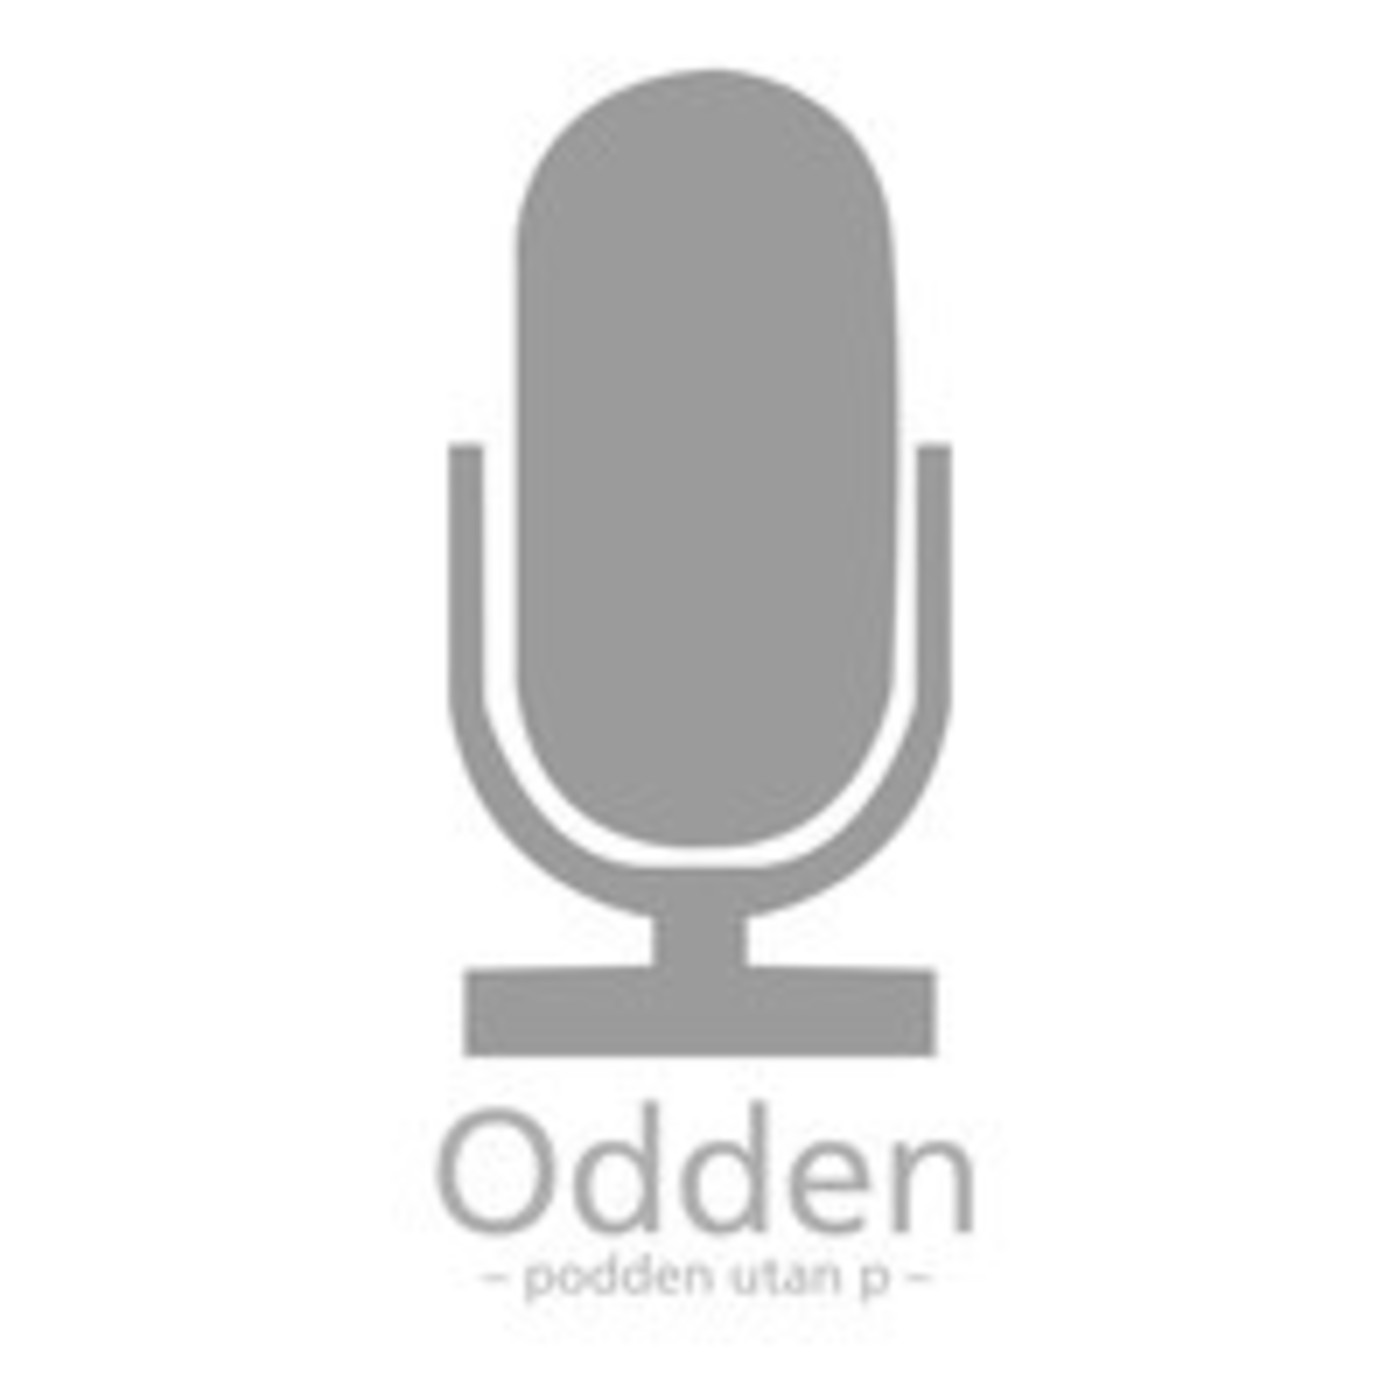 Odden's Podcast